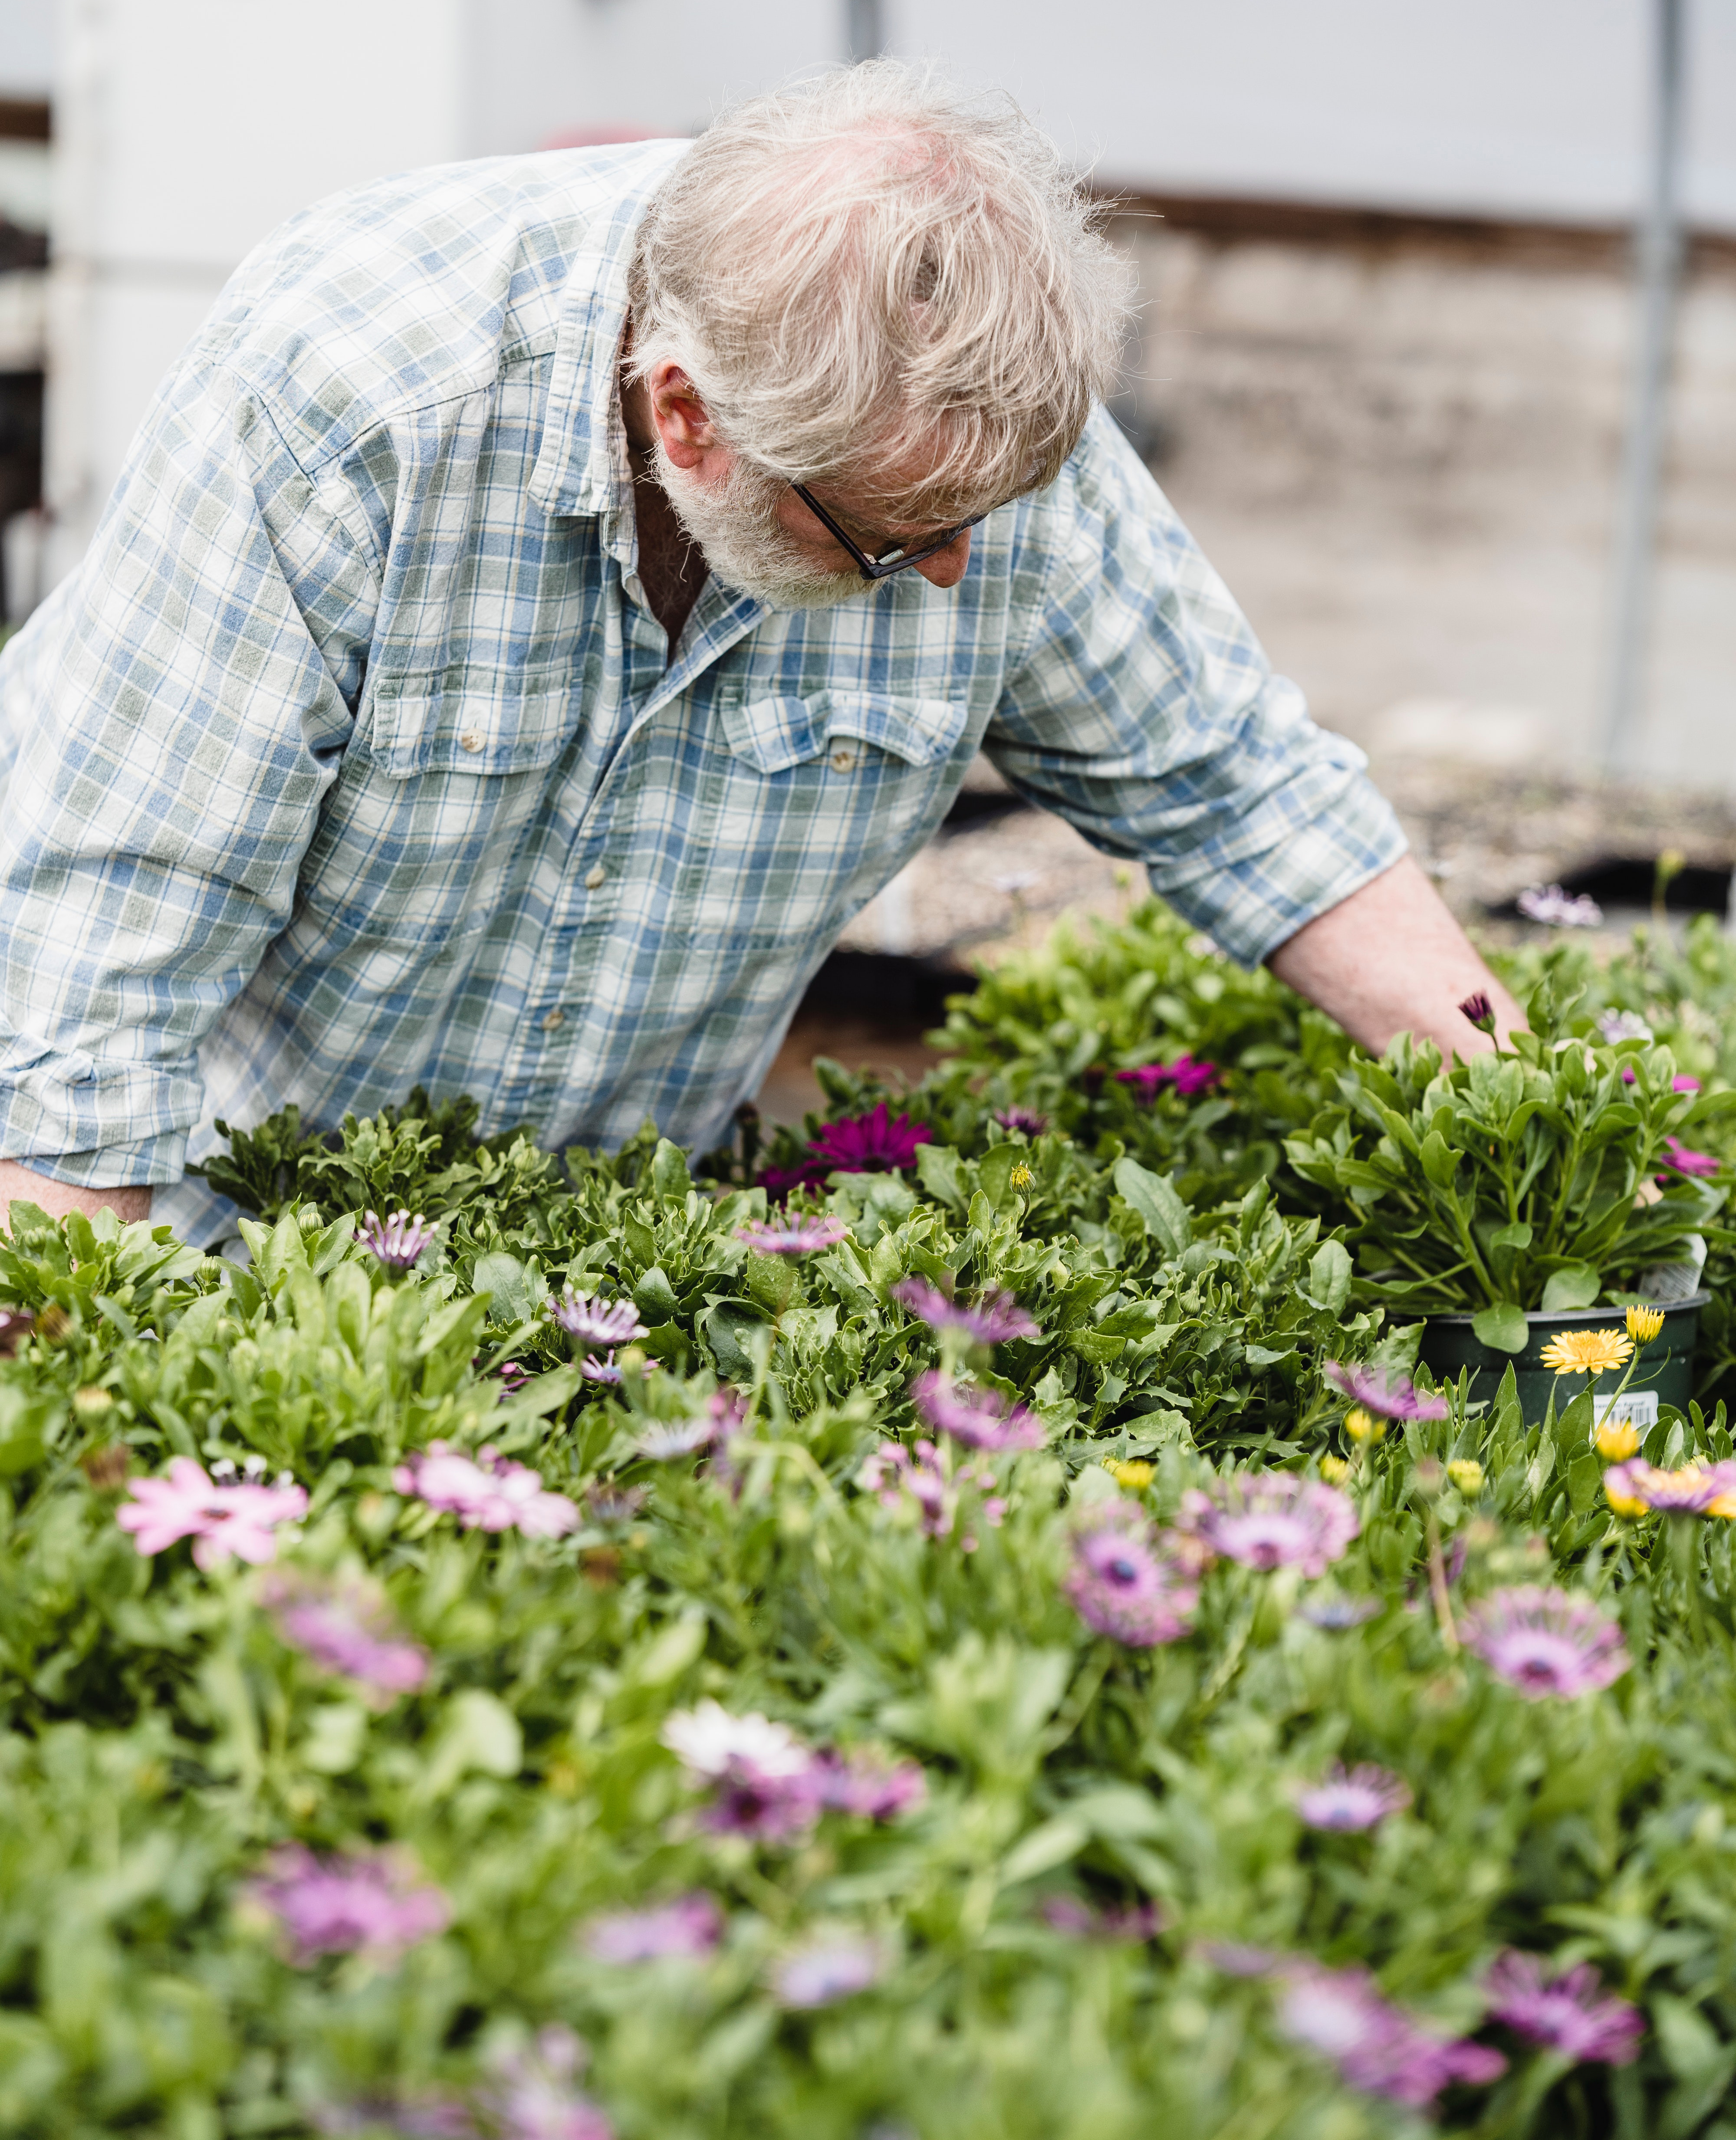 Herbal gardens offer multiple benefits